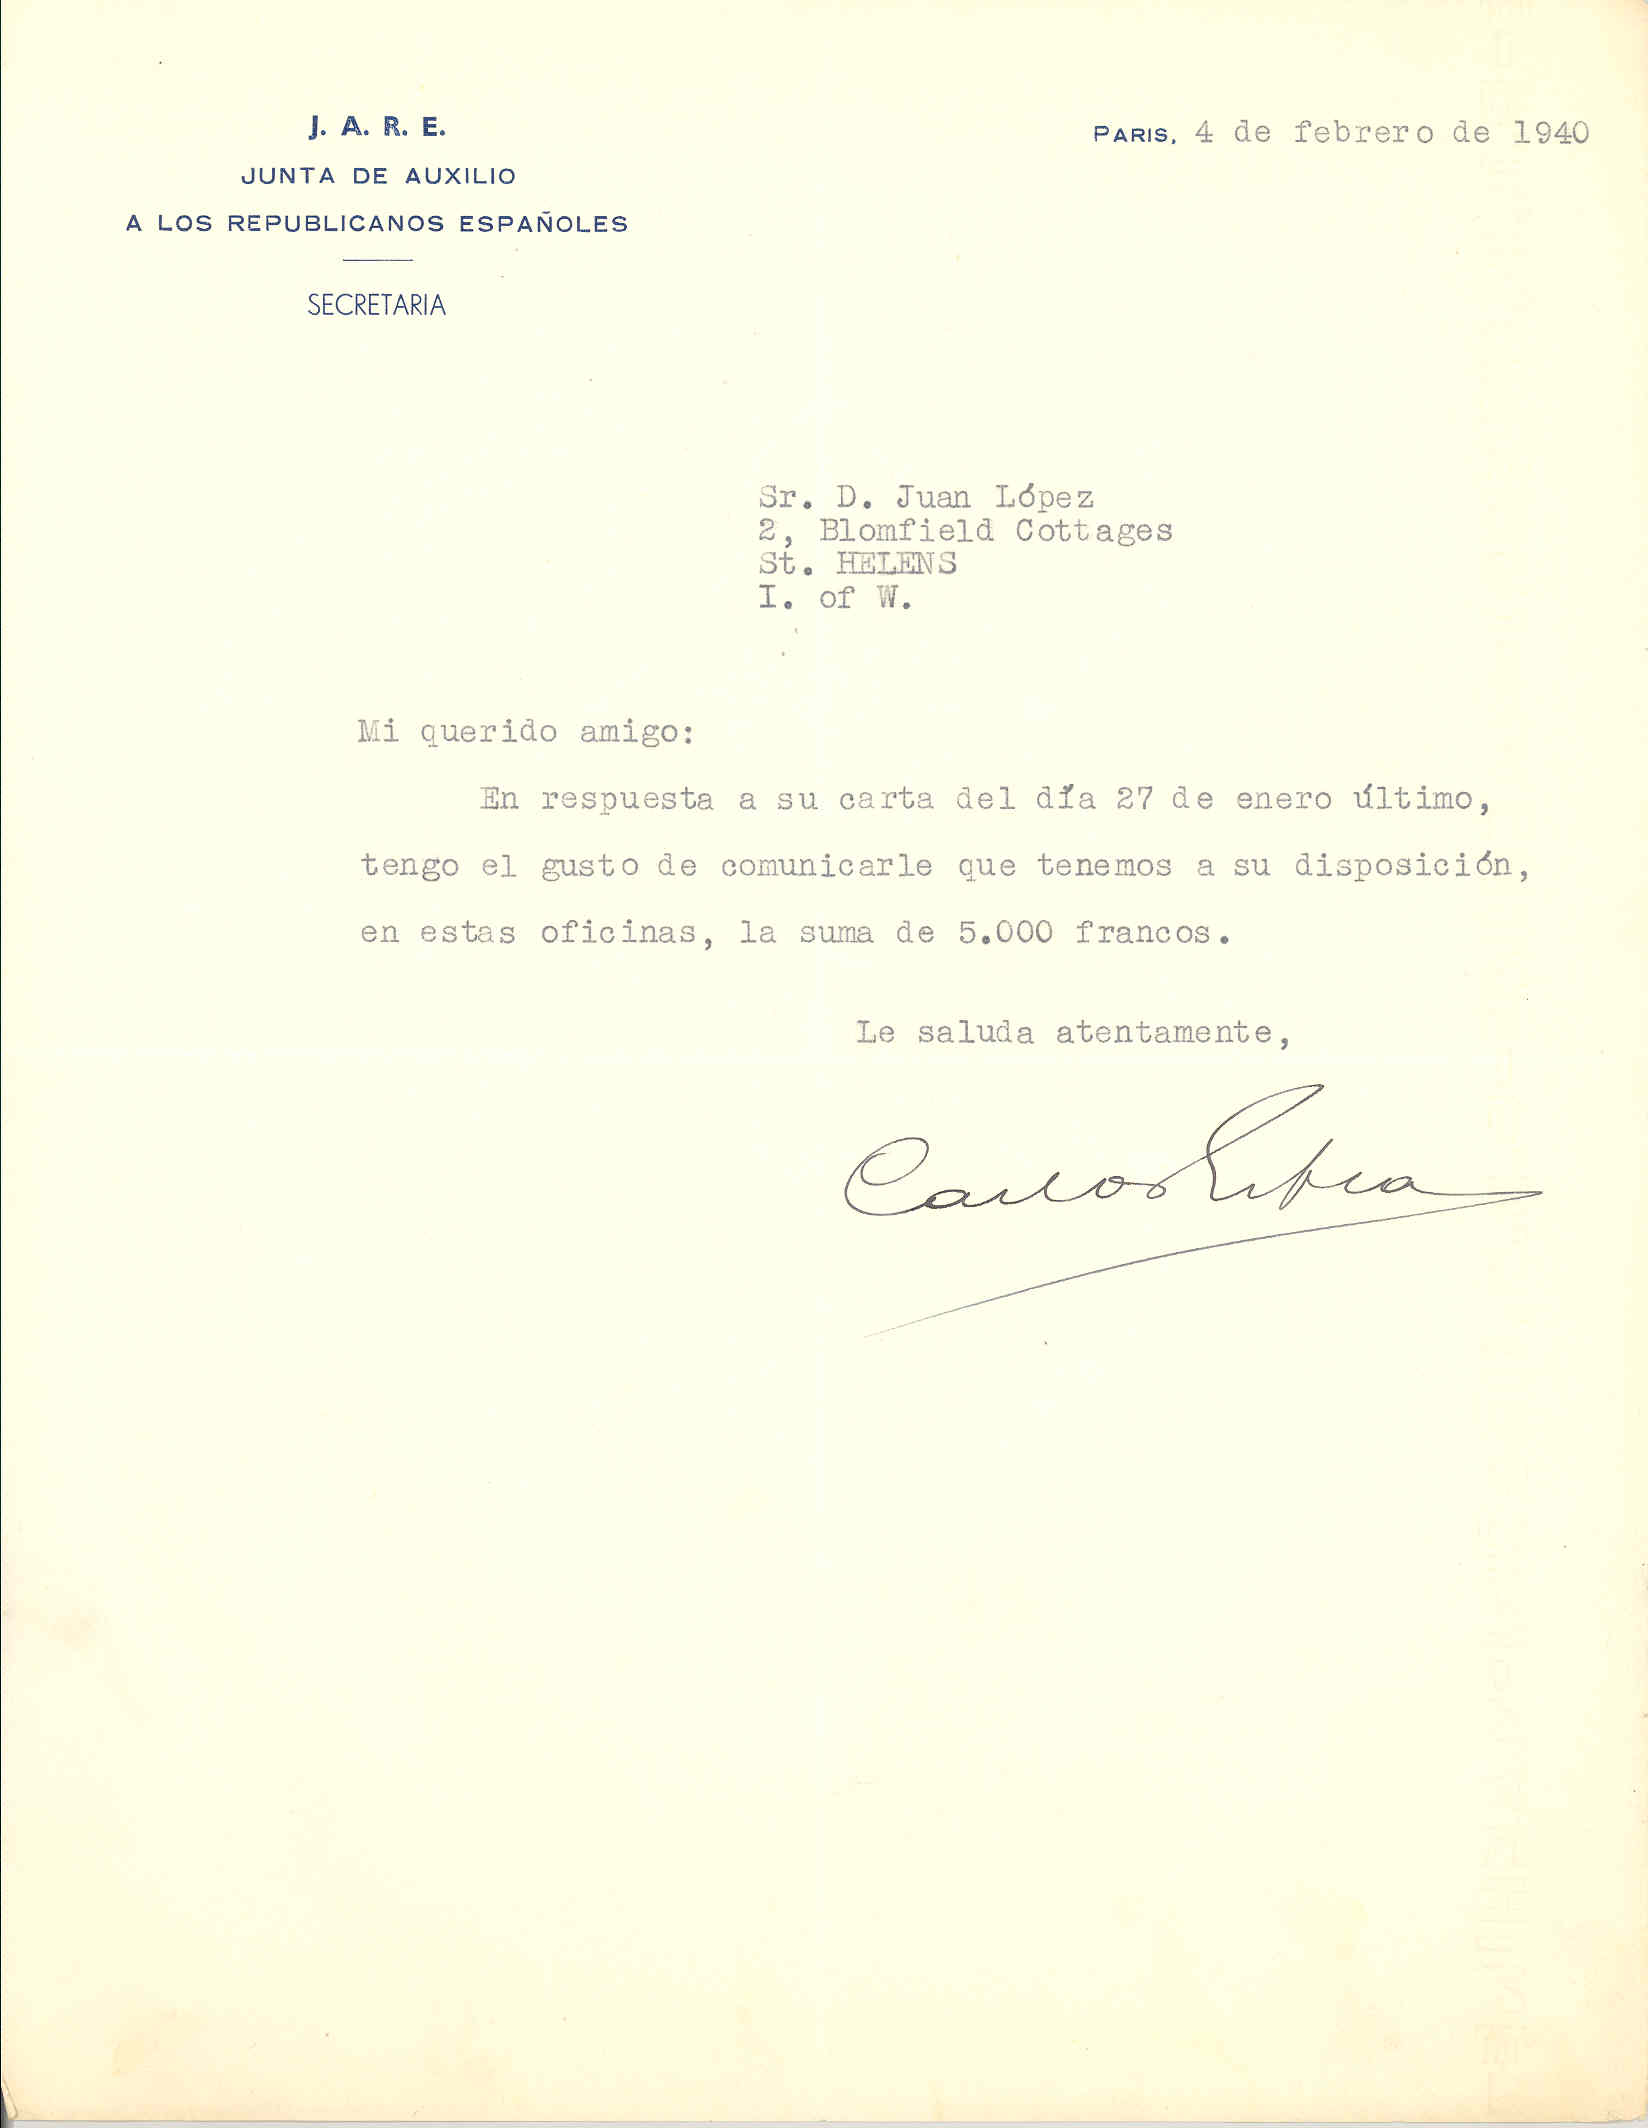 Carta de la Junta de Auxilo a  los Republicanos Españoles informándole de que tiene a su disposición 5.000 francos de ayuda.